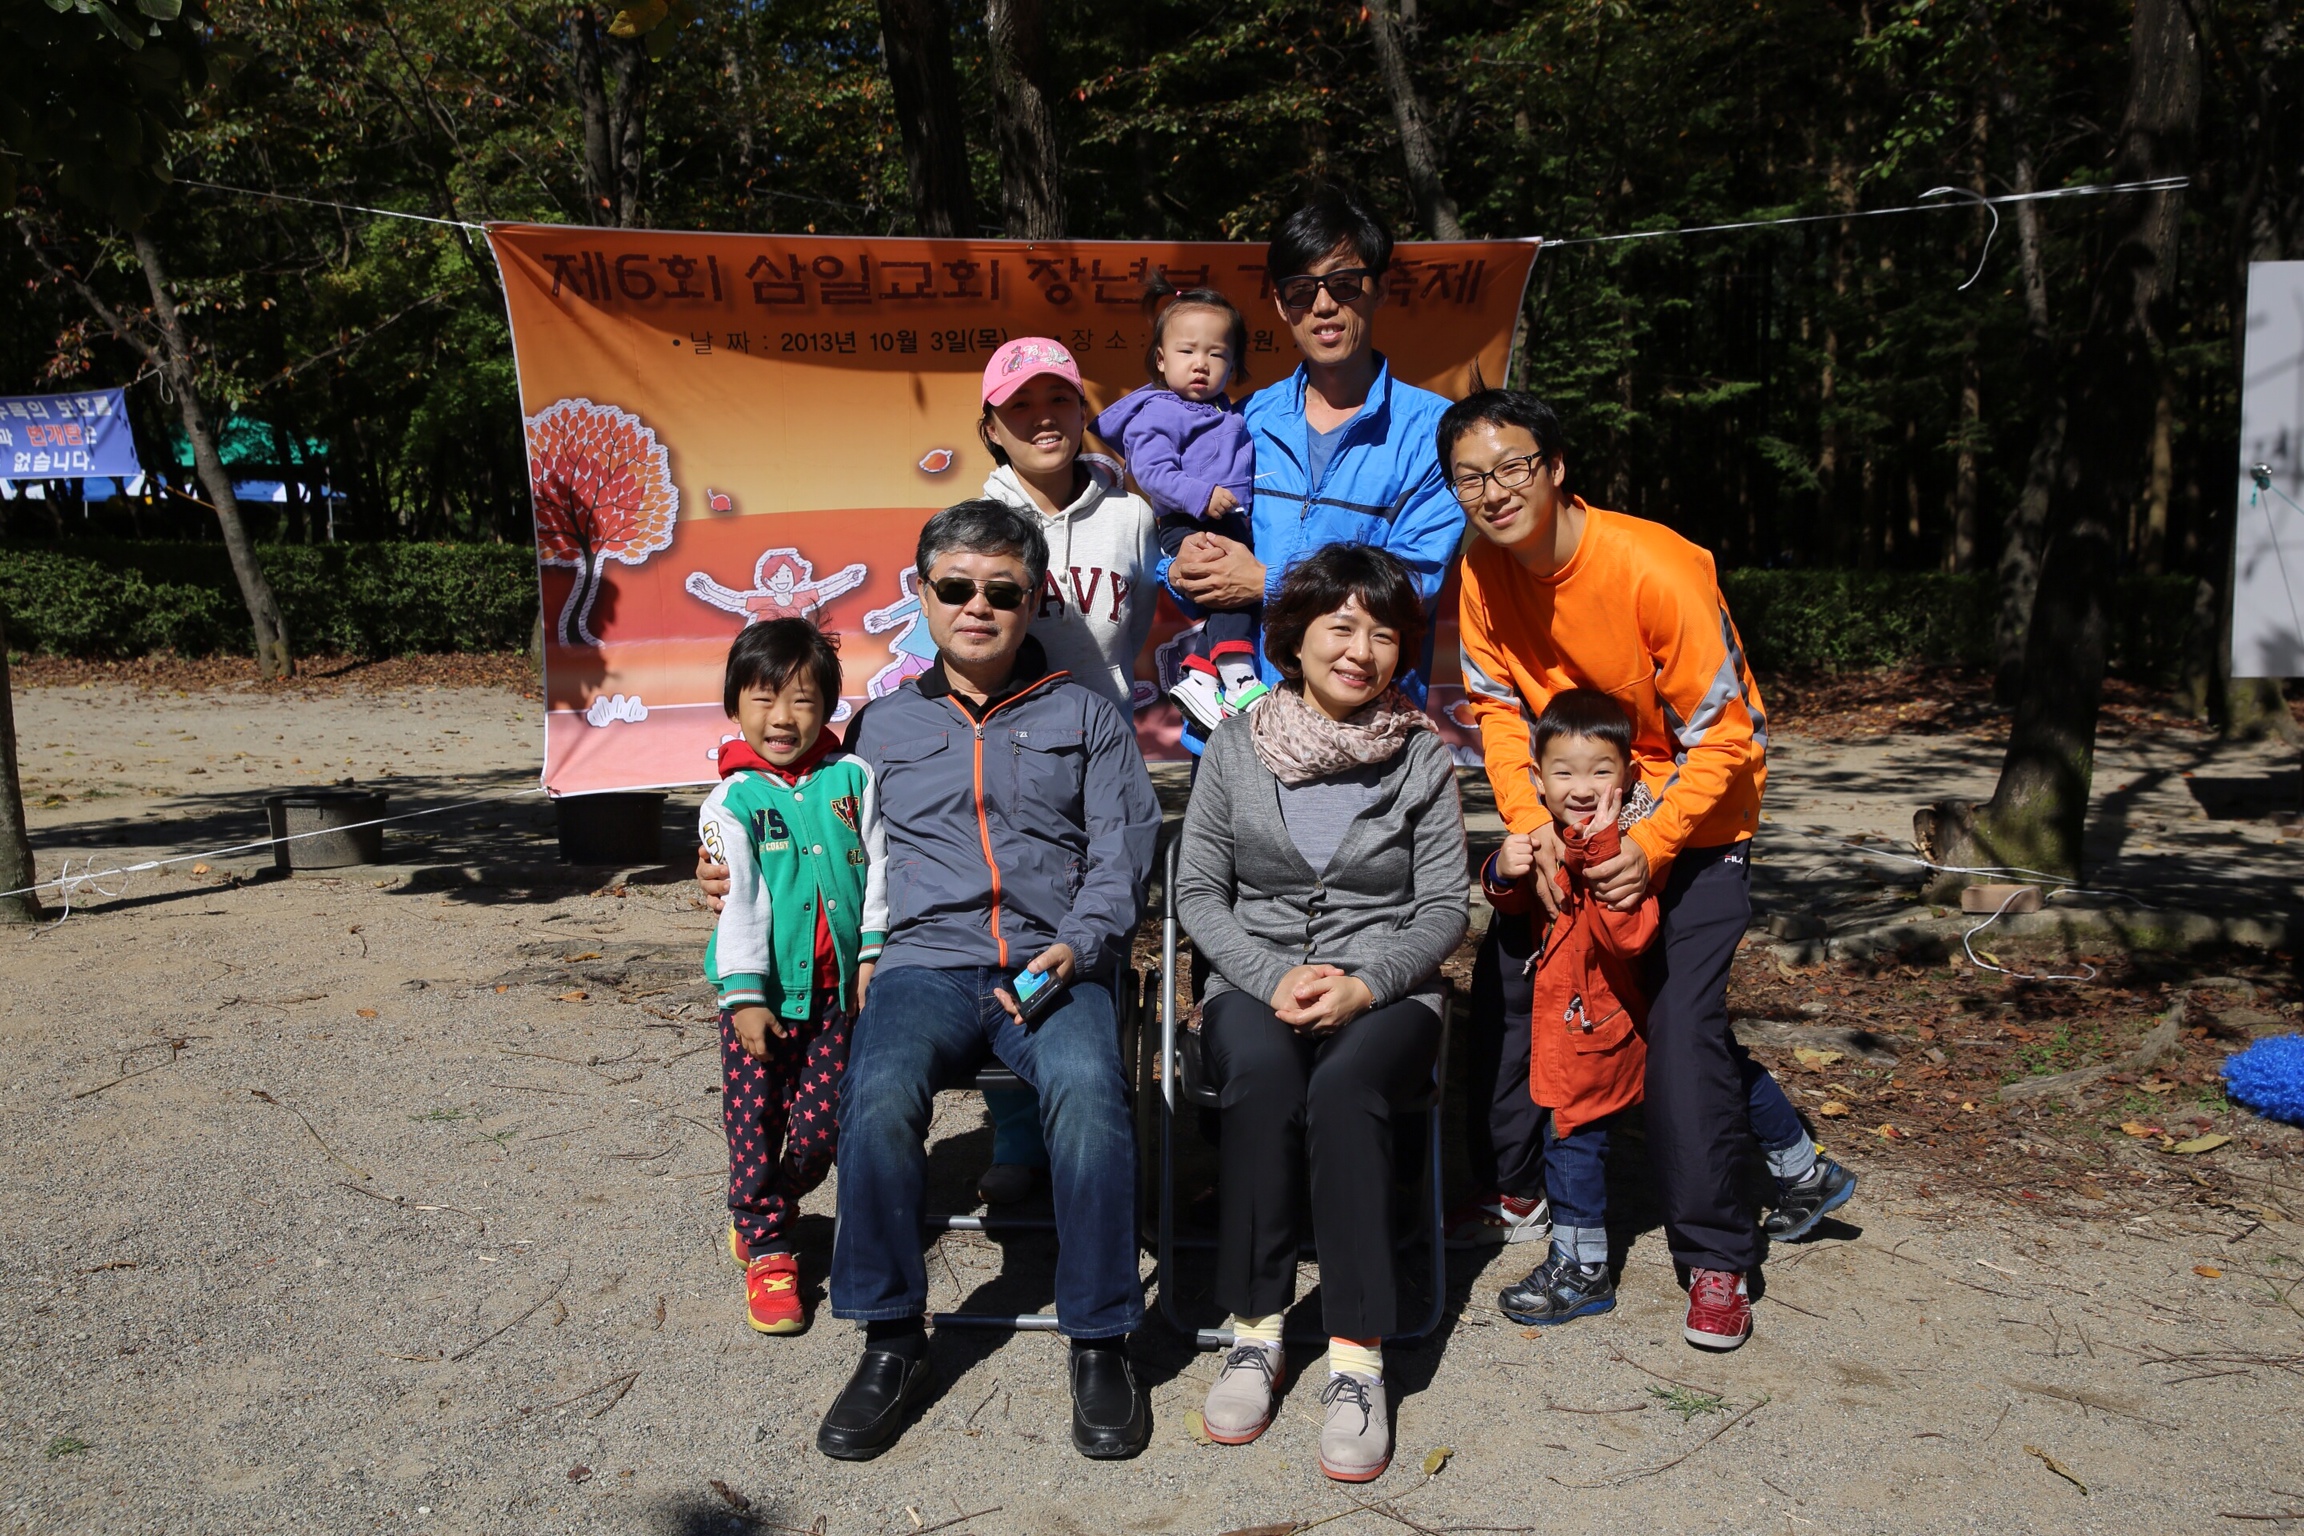 IMG_20131003_103612.jpg : 제 6회 삼일교회 장년 가을축제 - 담임목사님과 함께 가족사진